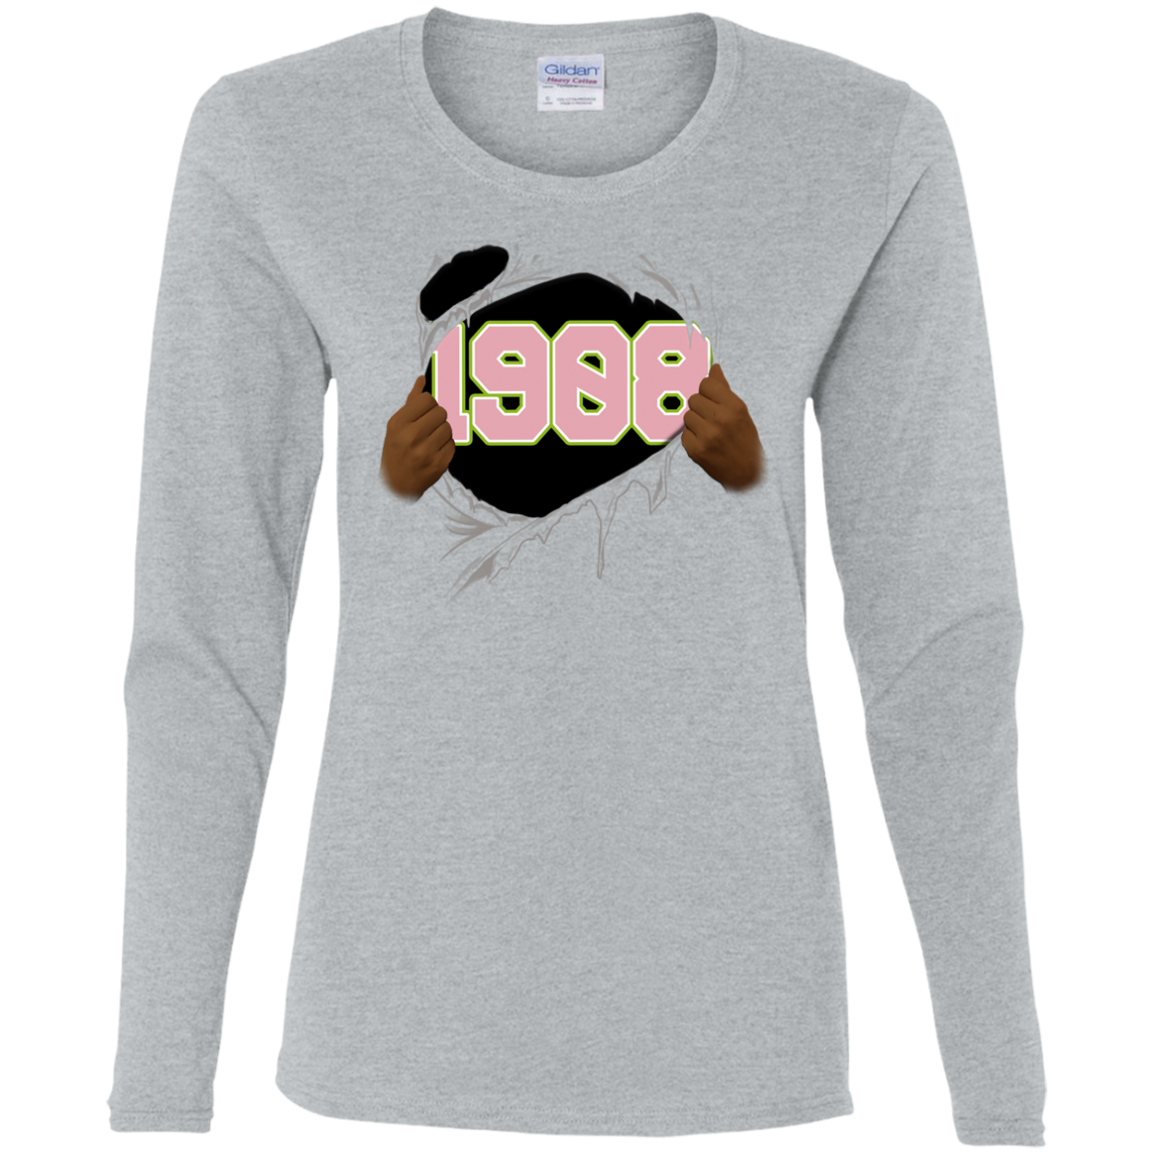 1908 Ripped LS T-Shirt